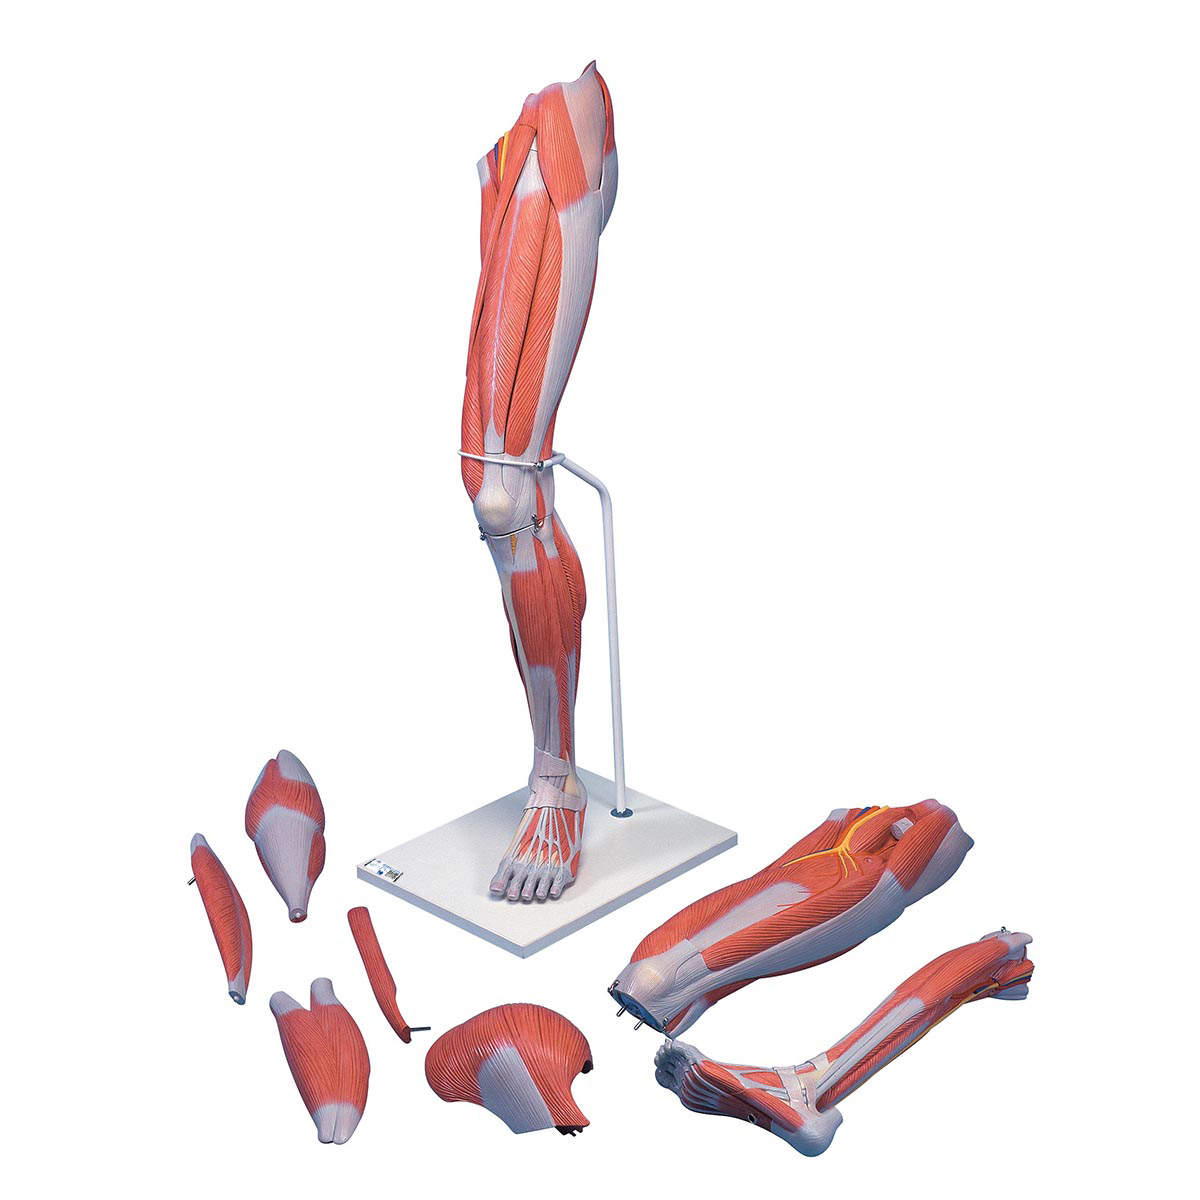 Beinmuskel Modell, 7-teilig - 3B Smart Anatomy, Bestellnummer 1000352, M21, 3B Scientific